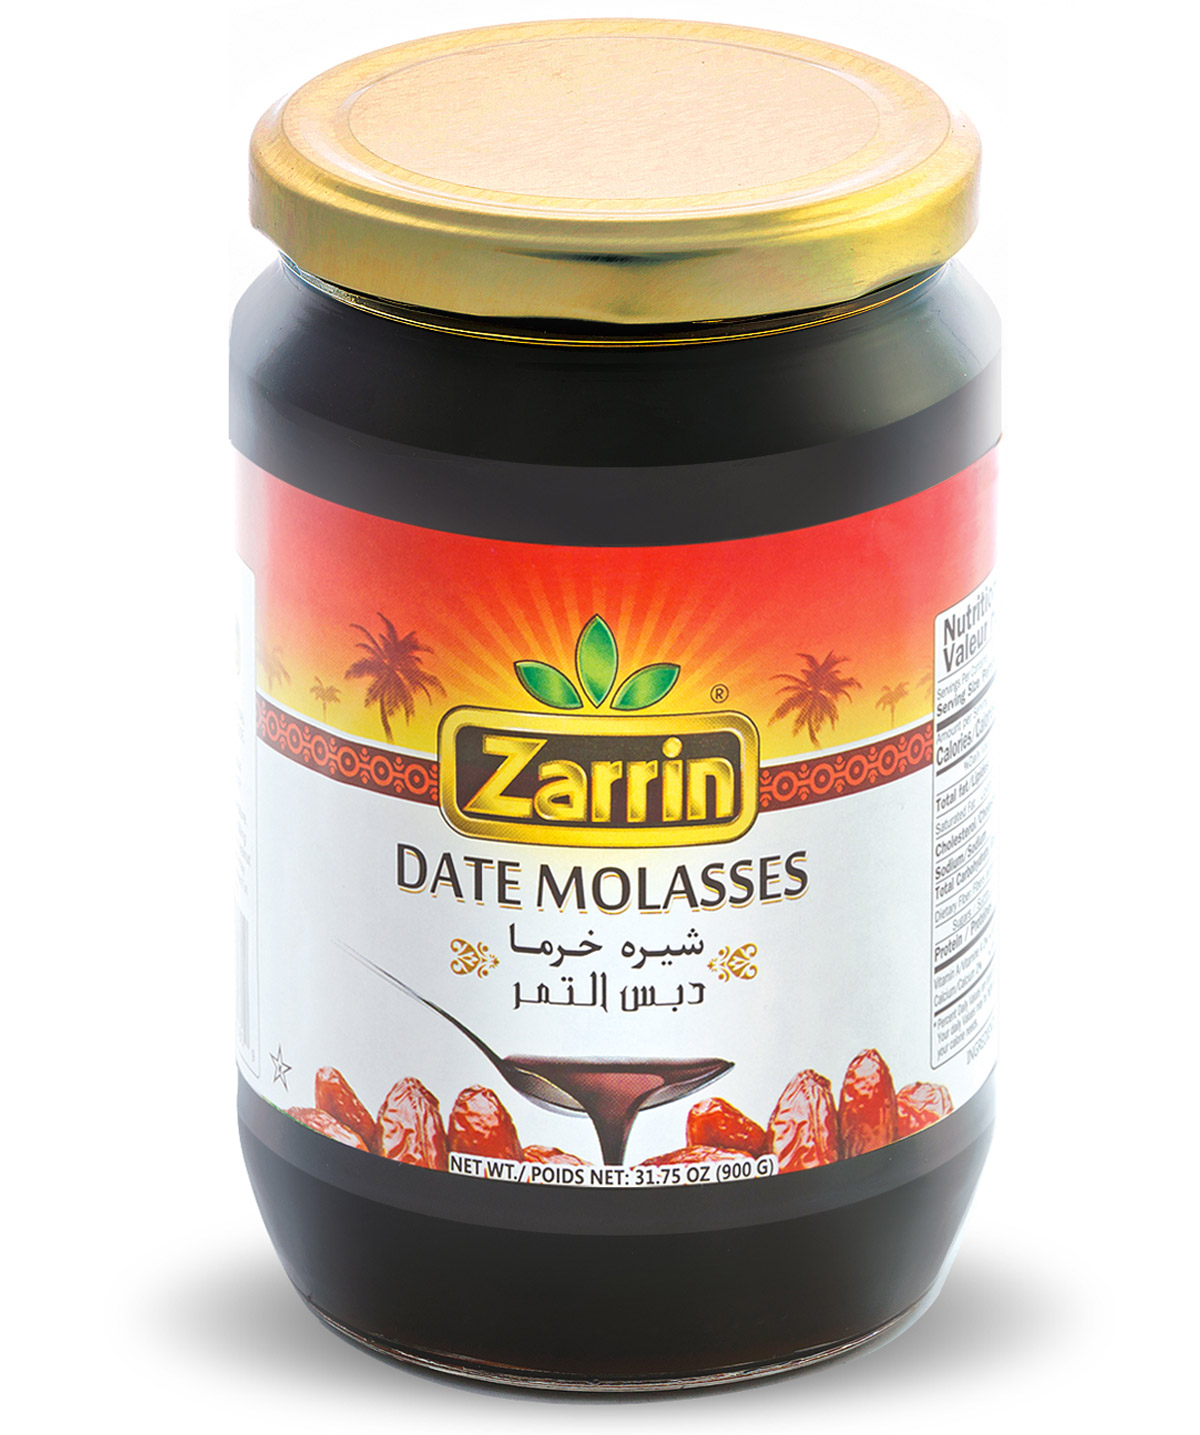 Date Molasses in Glass Jar